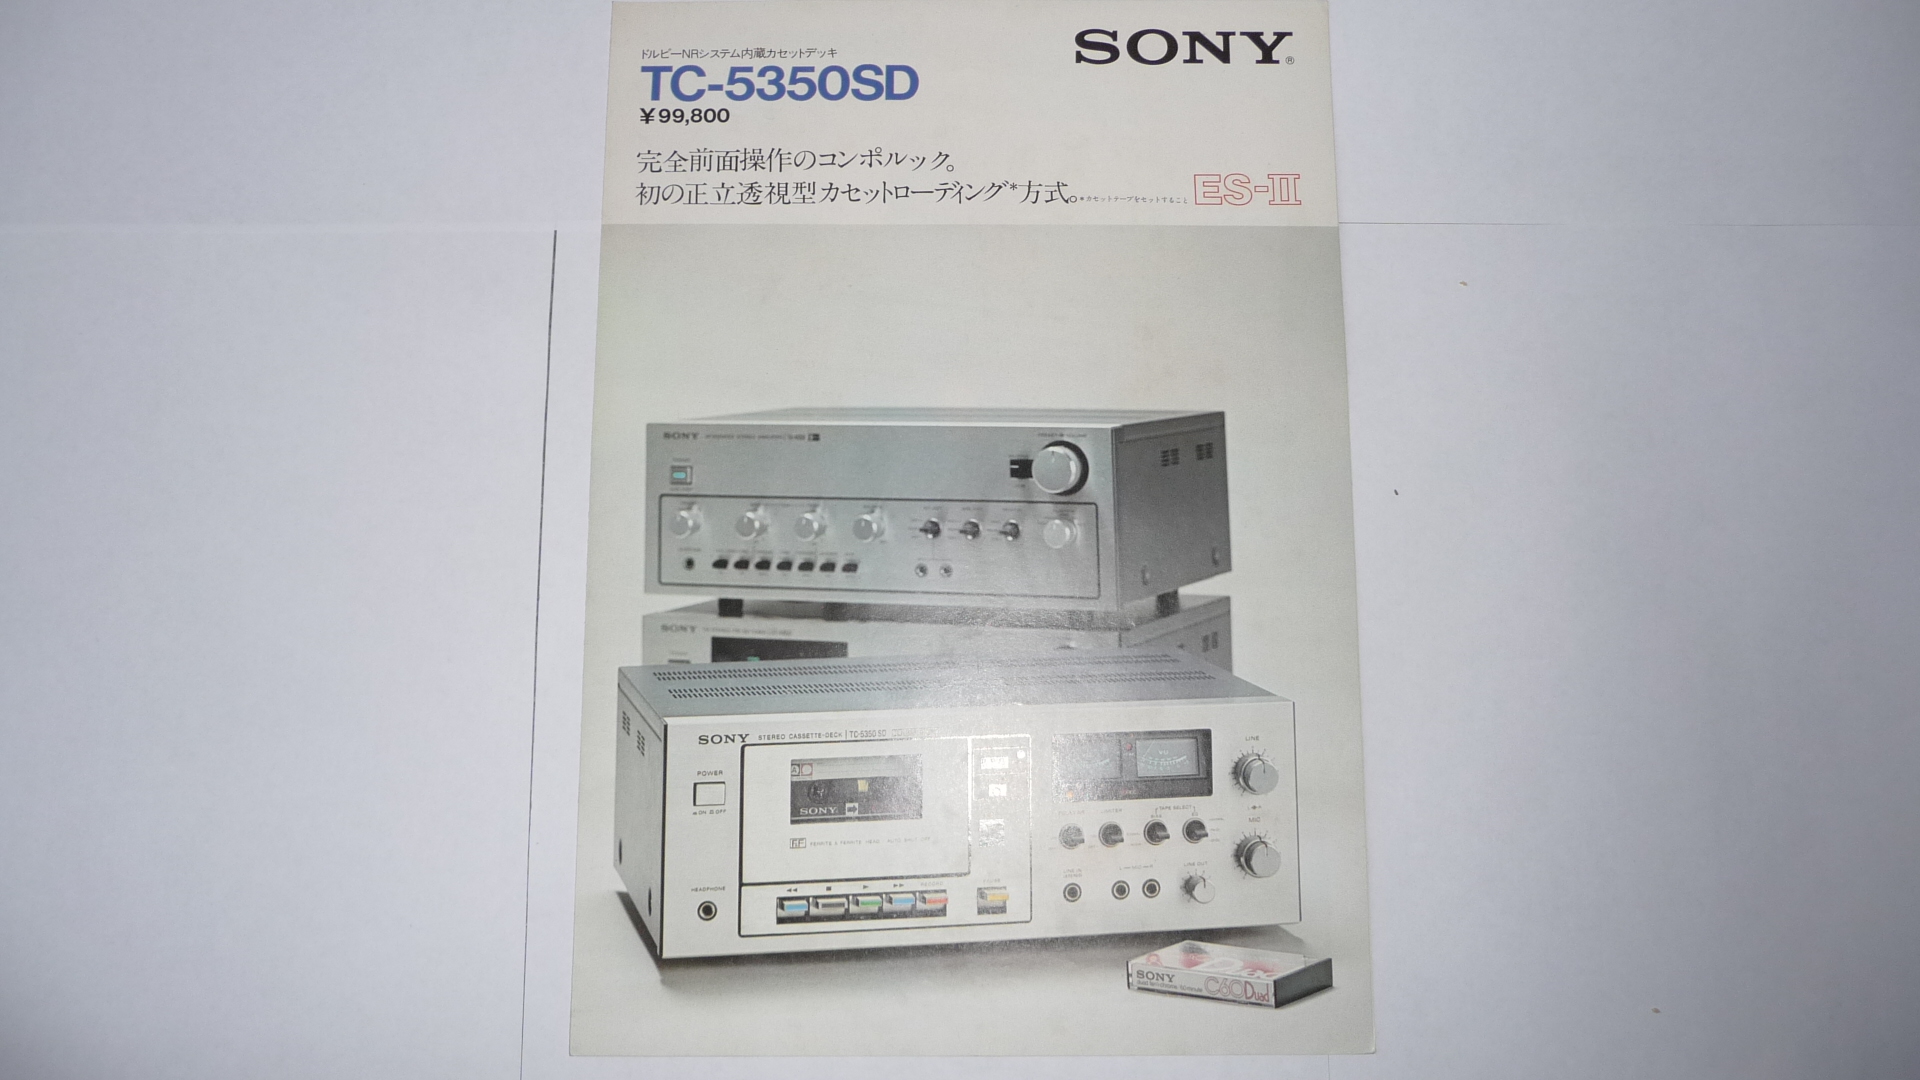 SONY TC-5350SD